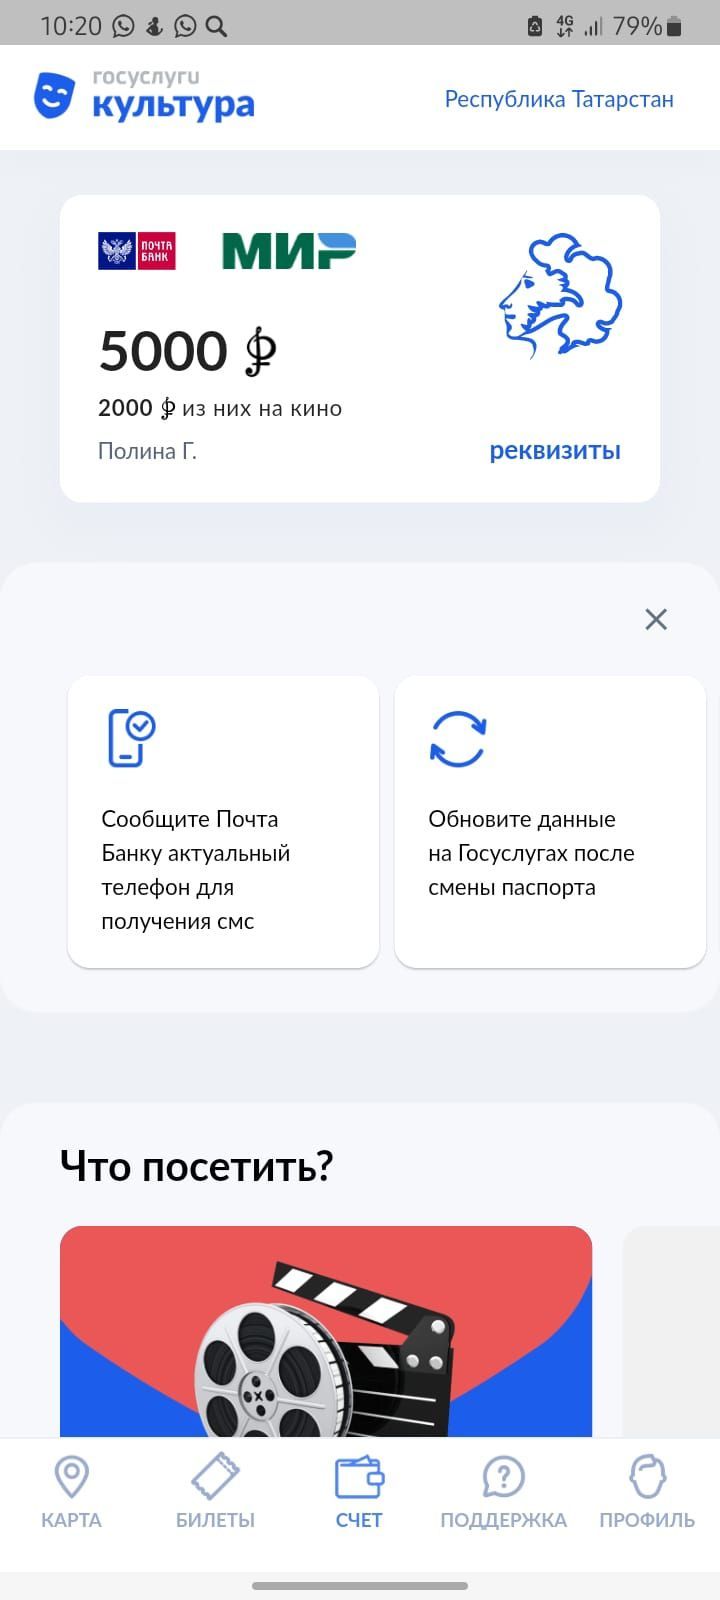 «Пушкинская карта» теперь в мобильном приложении